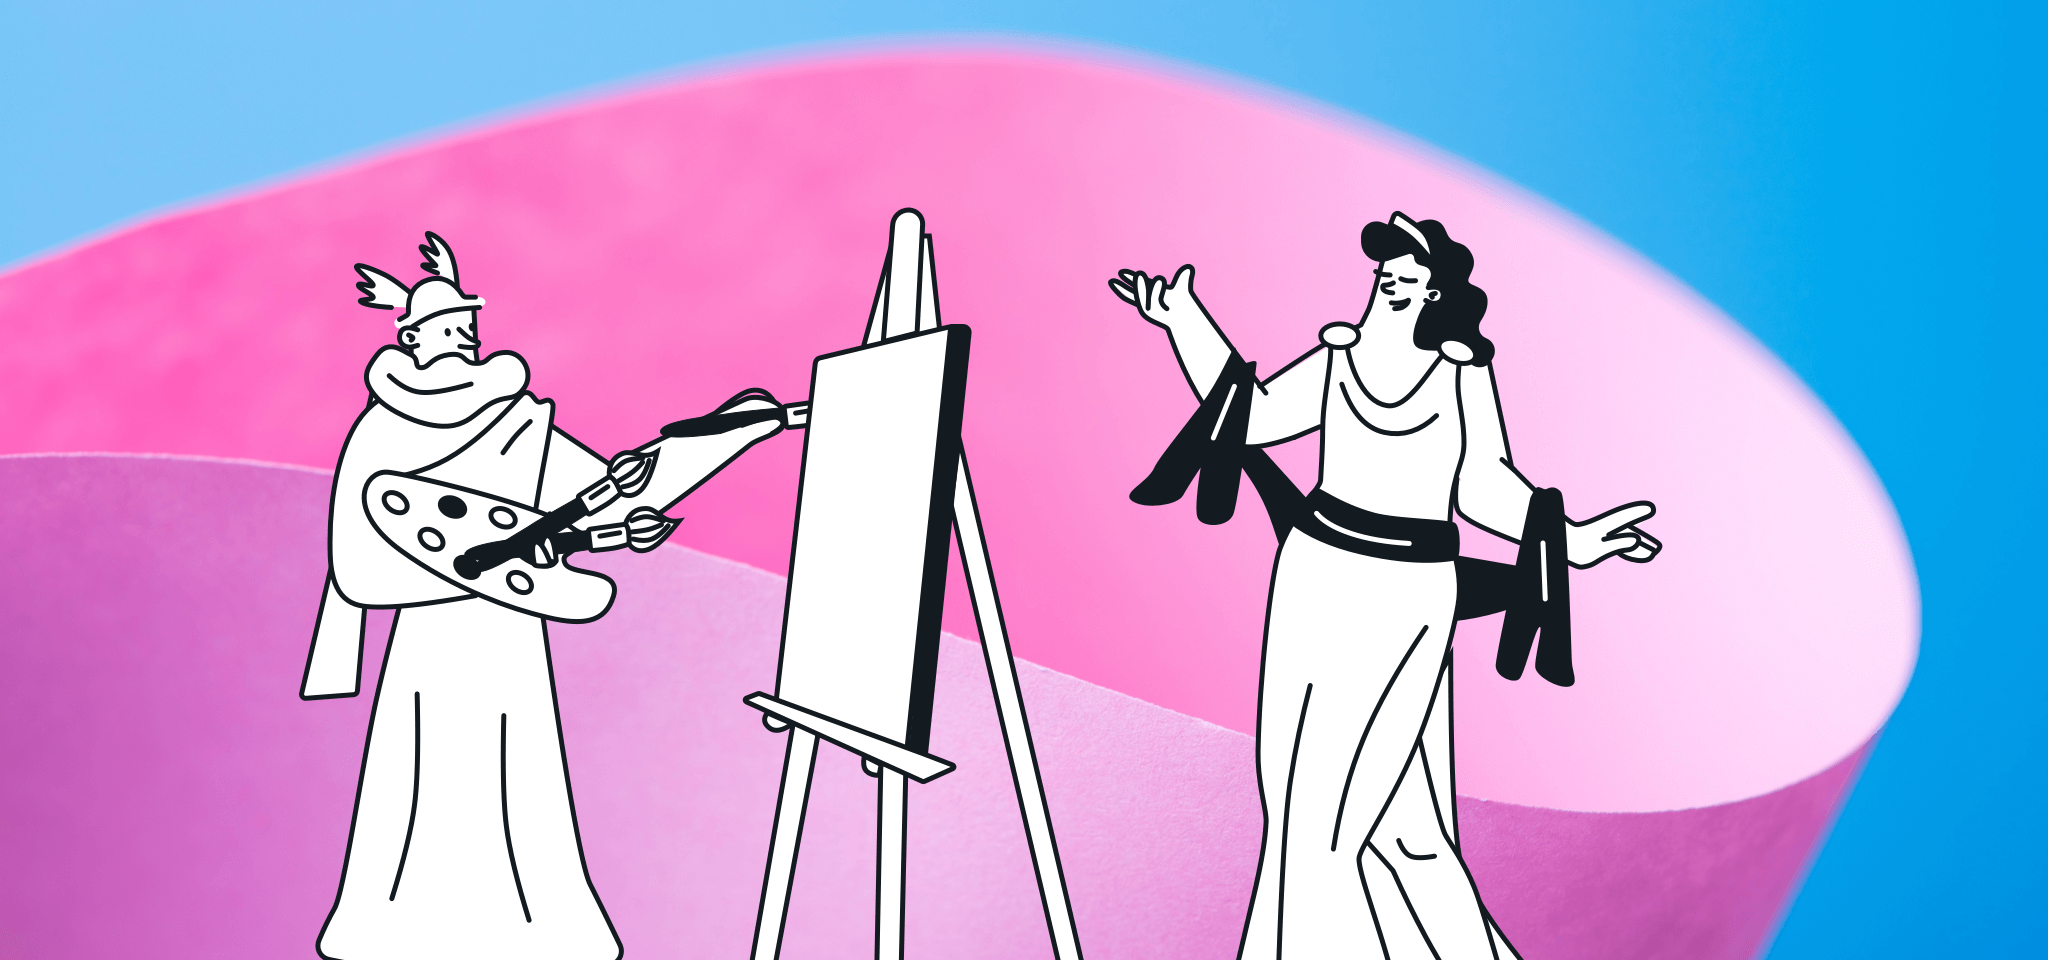 Hermes malt eine Göttin auf rosa und blau